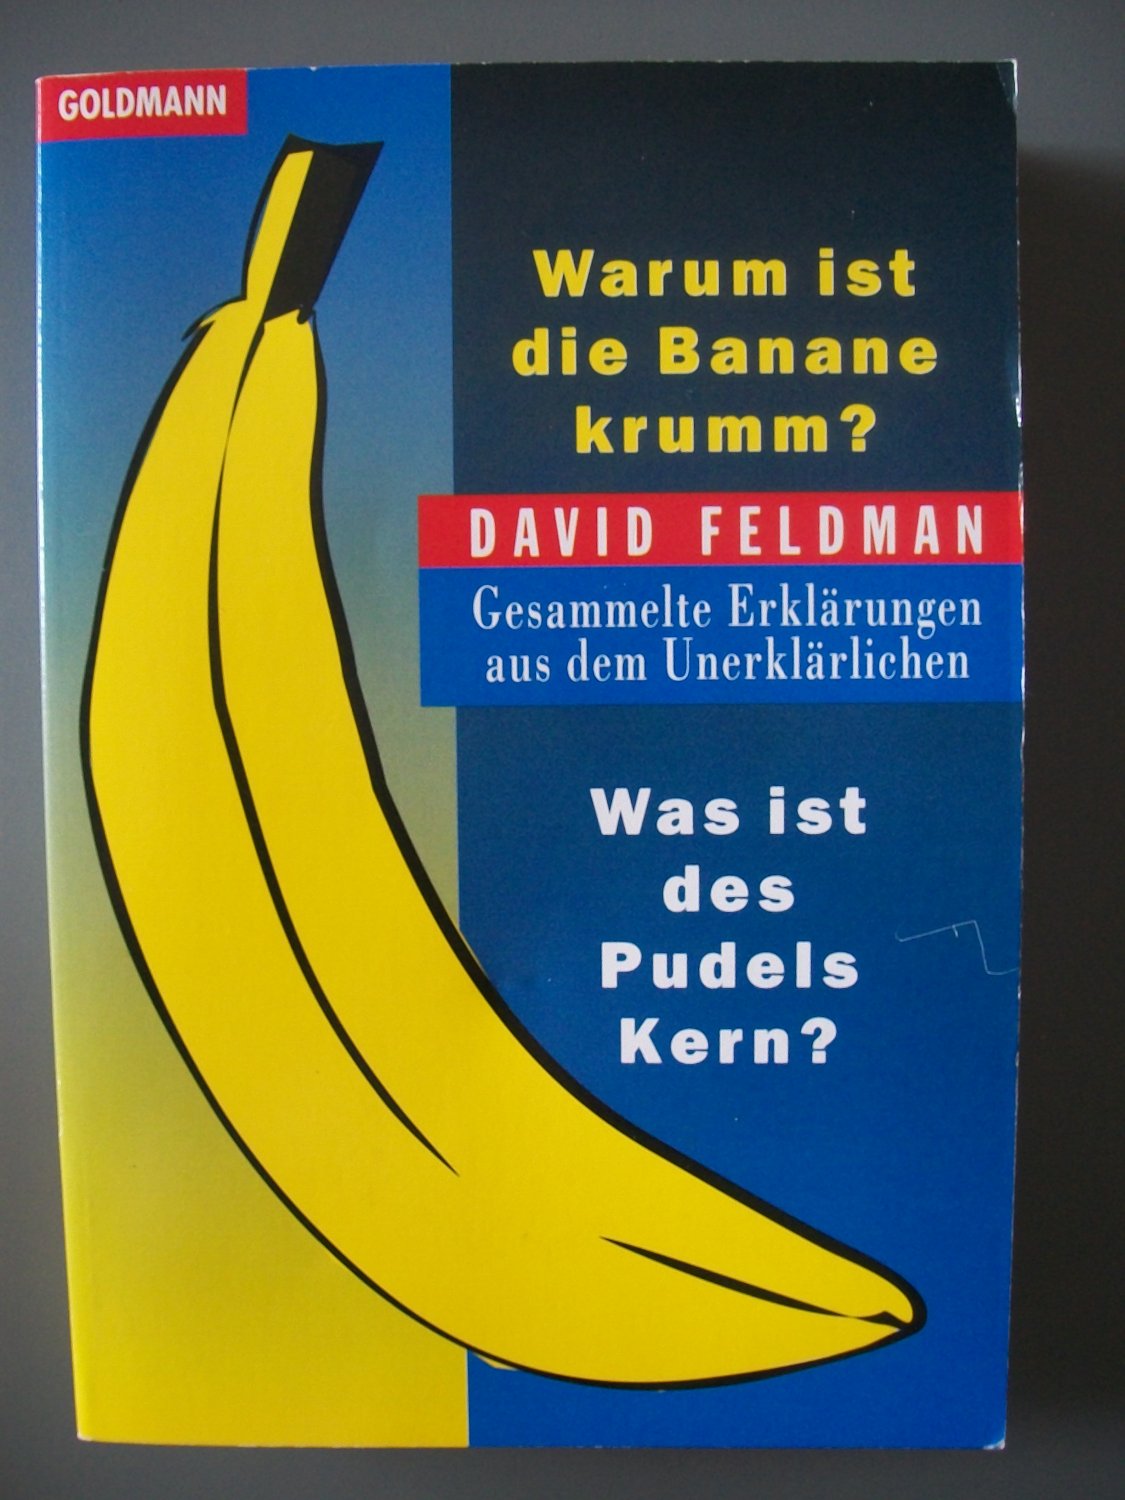 ISBN 3442131553 "Warum ist die Banane krumm? /Was ist des Pudels Kern